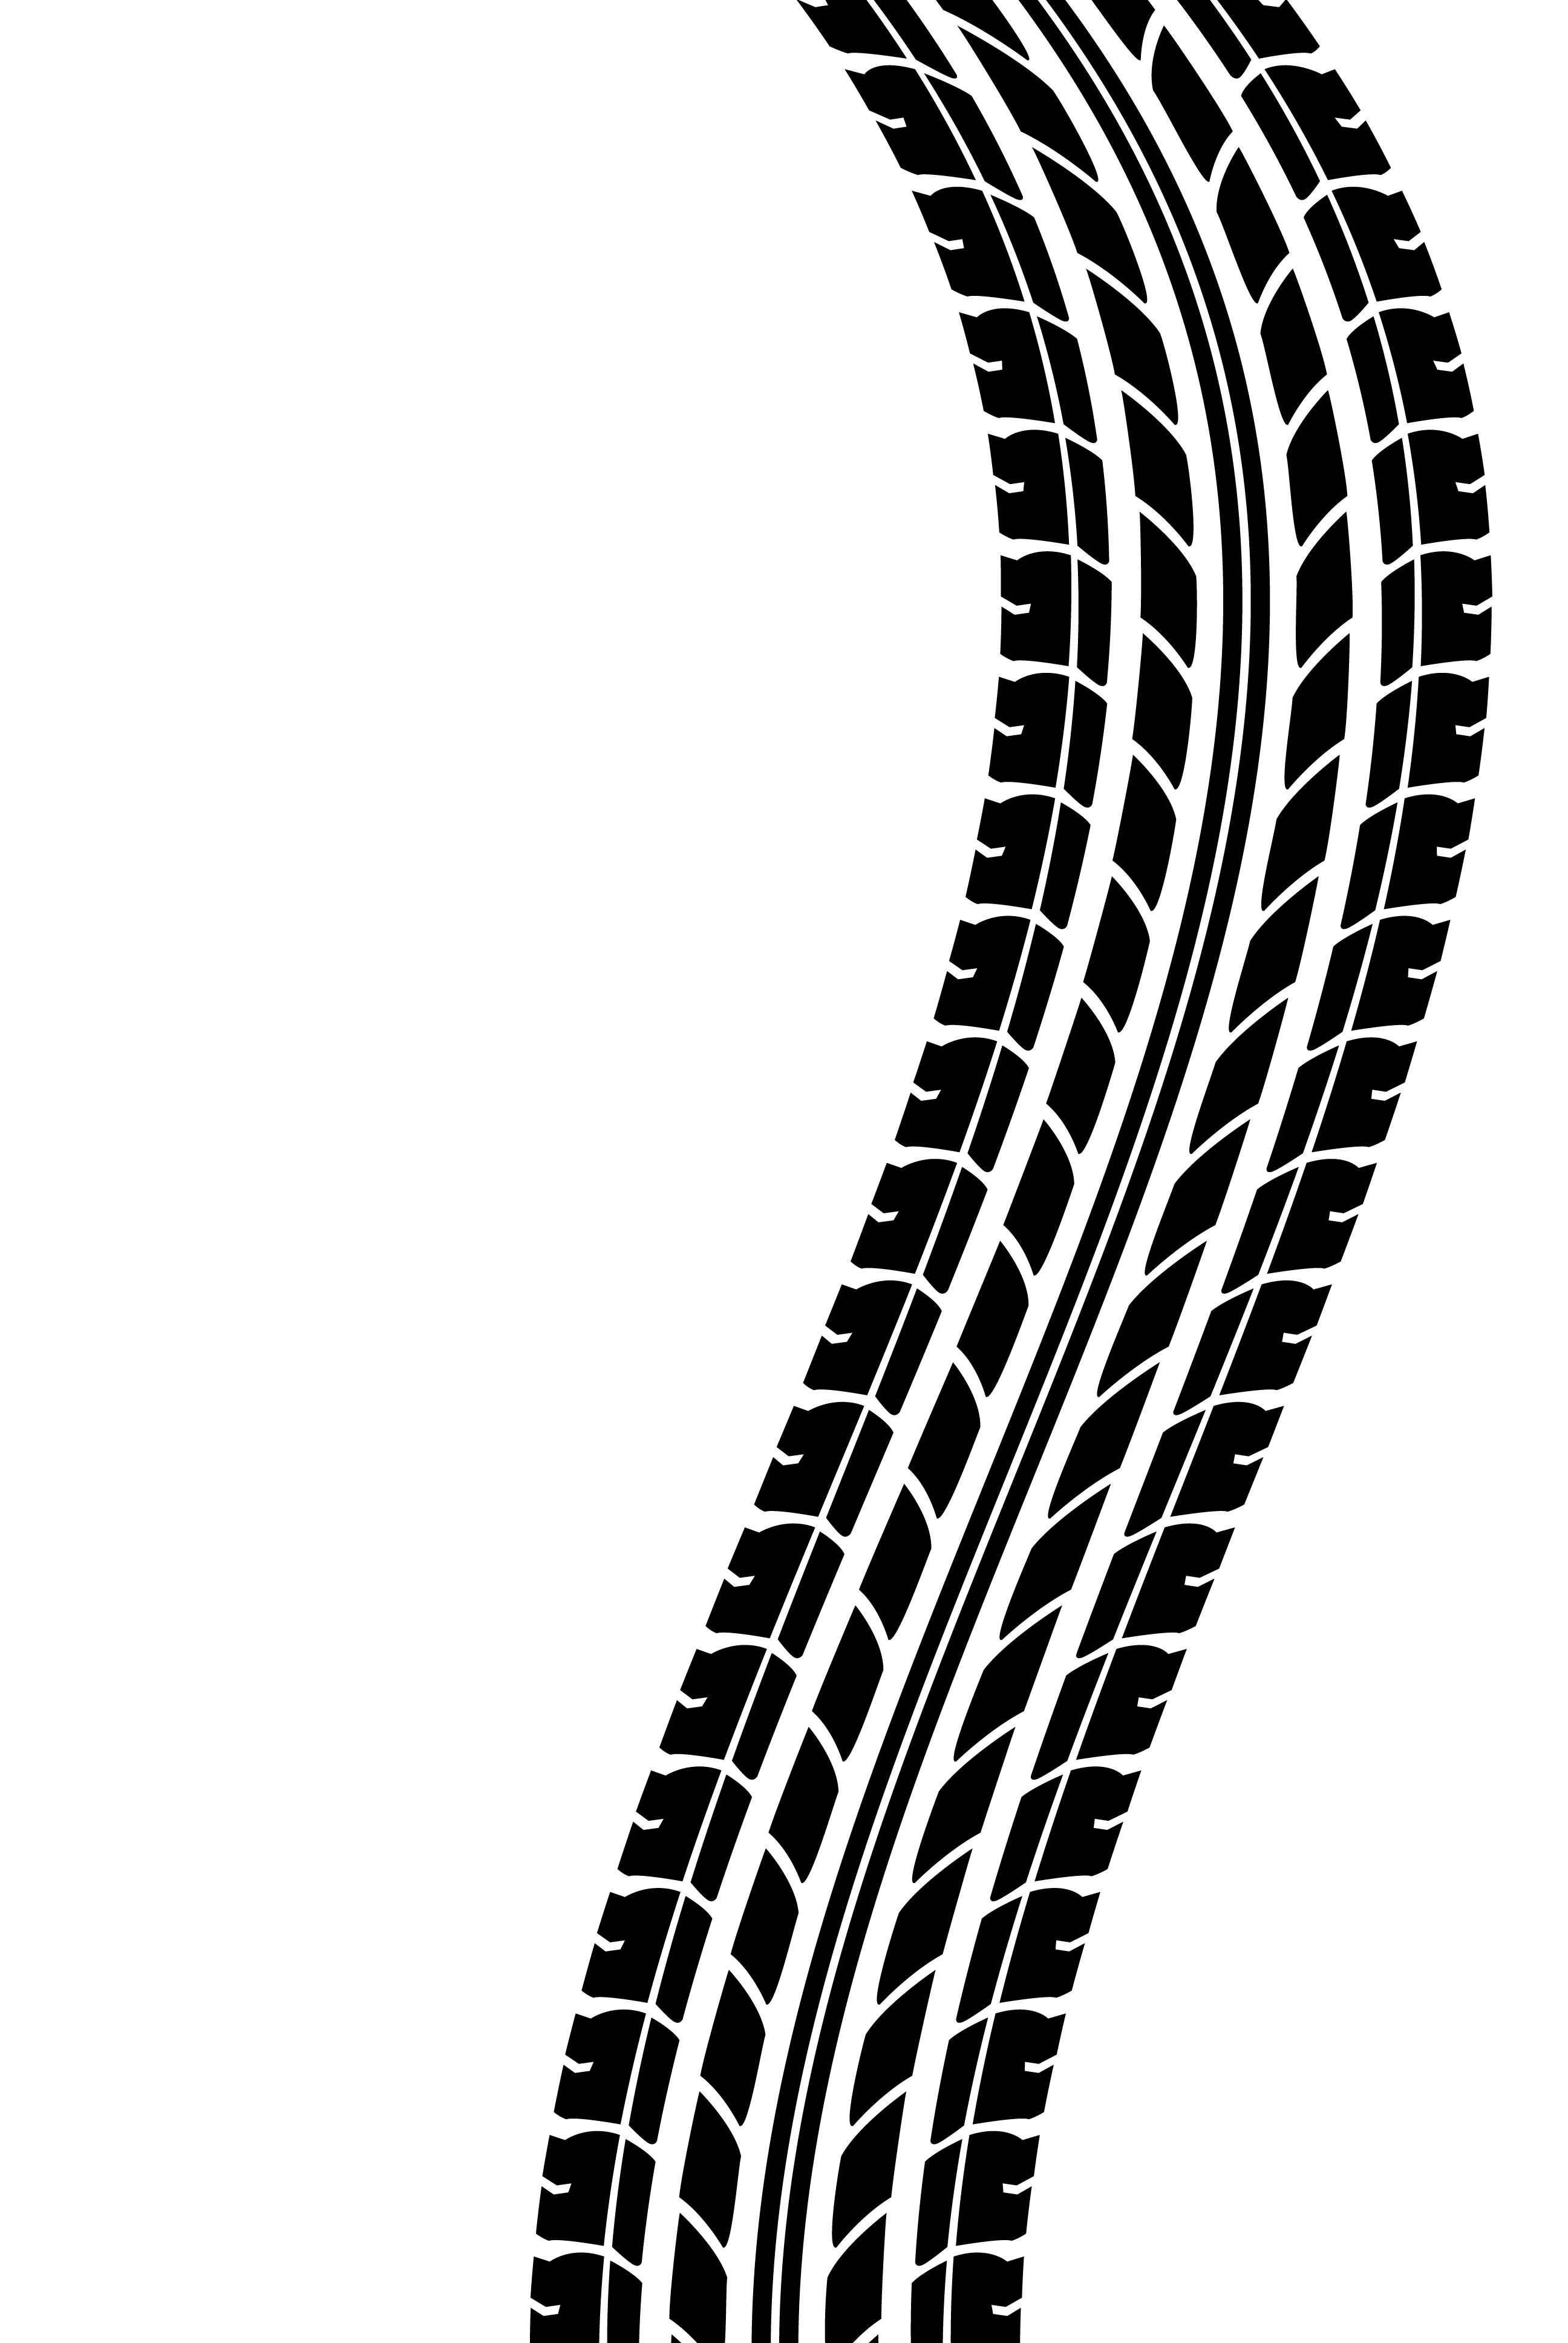 Tire Tracks Clip Art Cliparts - Tire Track Clipart